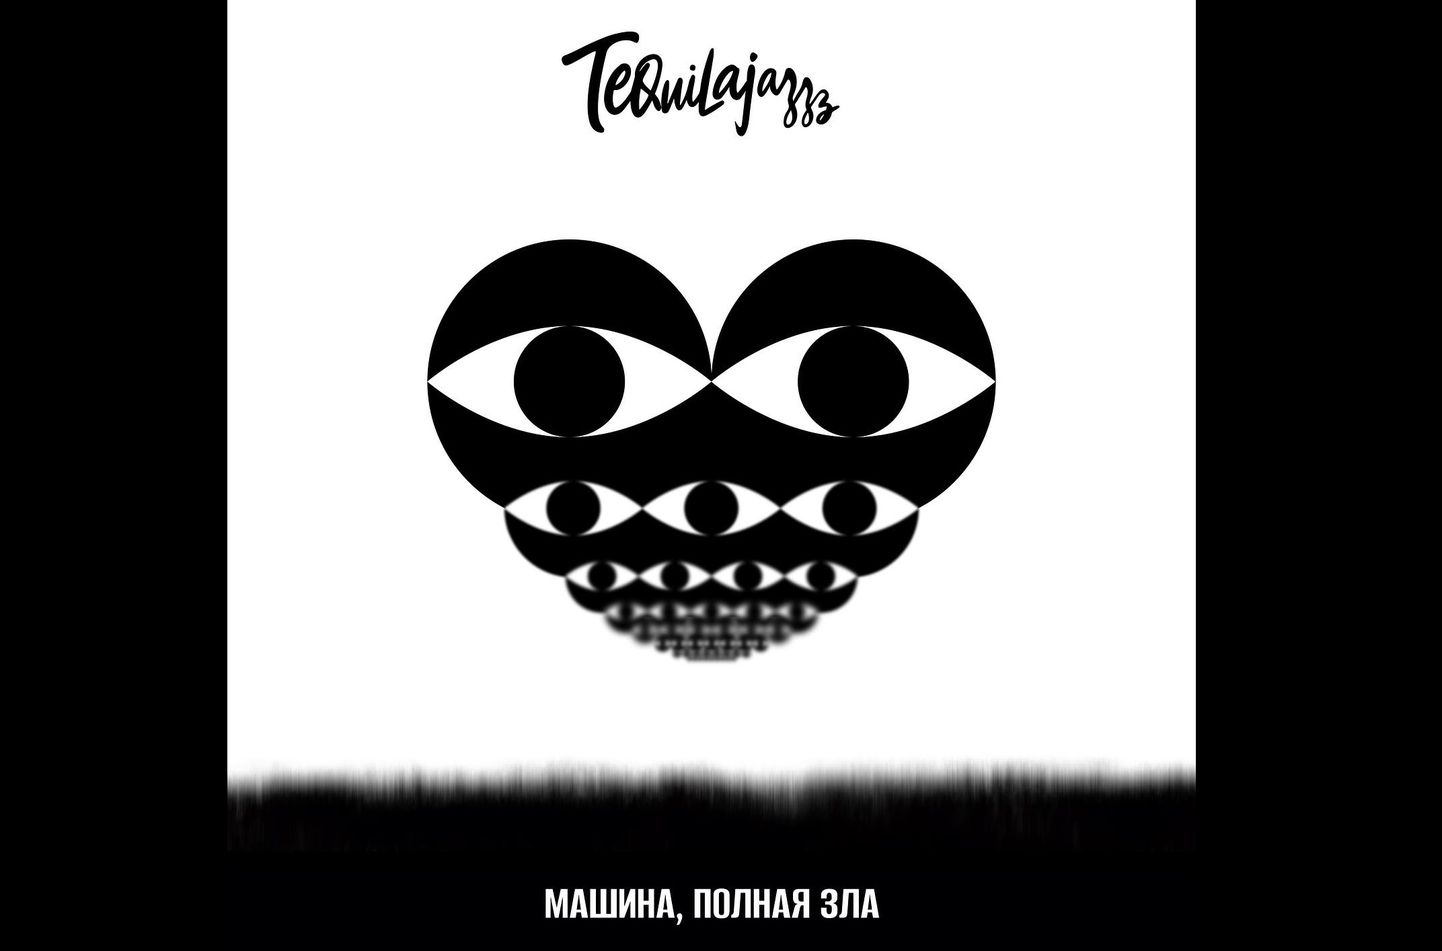 Обложка нового сингла Tequilajazzz, который был записан в Таллинне. Лидер группы Евгений Федоров рассказал Rus.Postimees о своем антивоенном высказывании в день премьеры песни 1 сентября 2023 года.